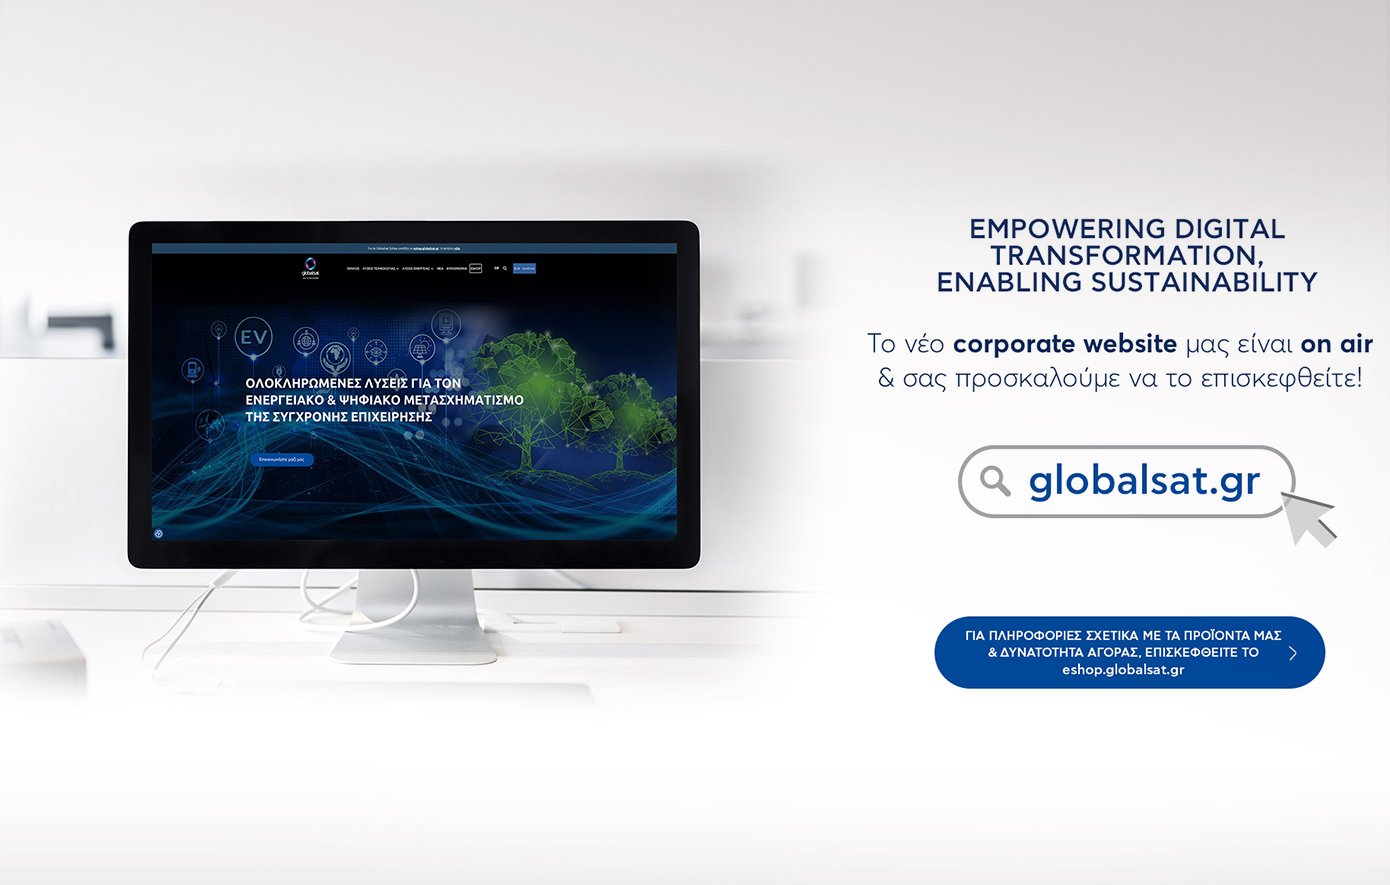 Ανακαλύψτε το Νέο Εταιρικό Site της Globalsat